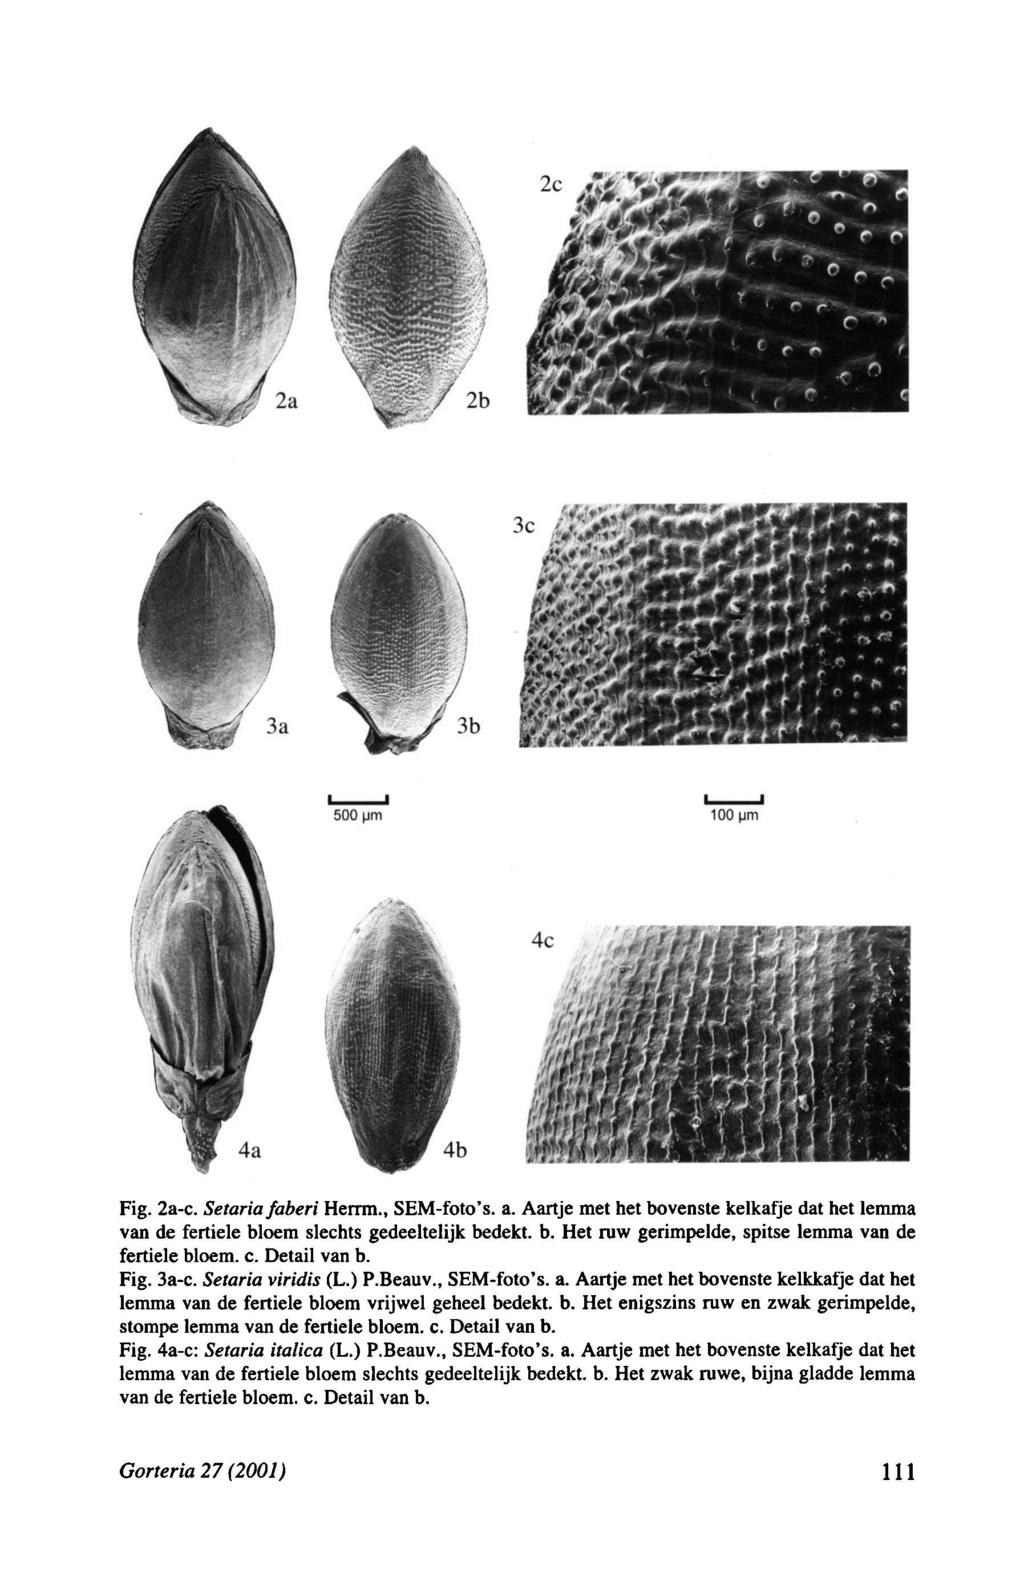 Fig. 2ac. Setaria faberi Herrm., SEMfoto s. a. Aartje met het bovenste kelkafje dat het lemma van de fertiele bloem slechts gedeeltelijk bedekt, b.